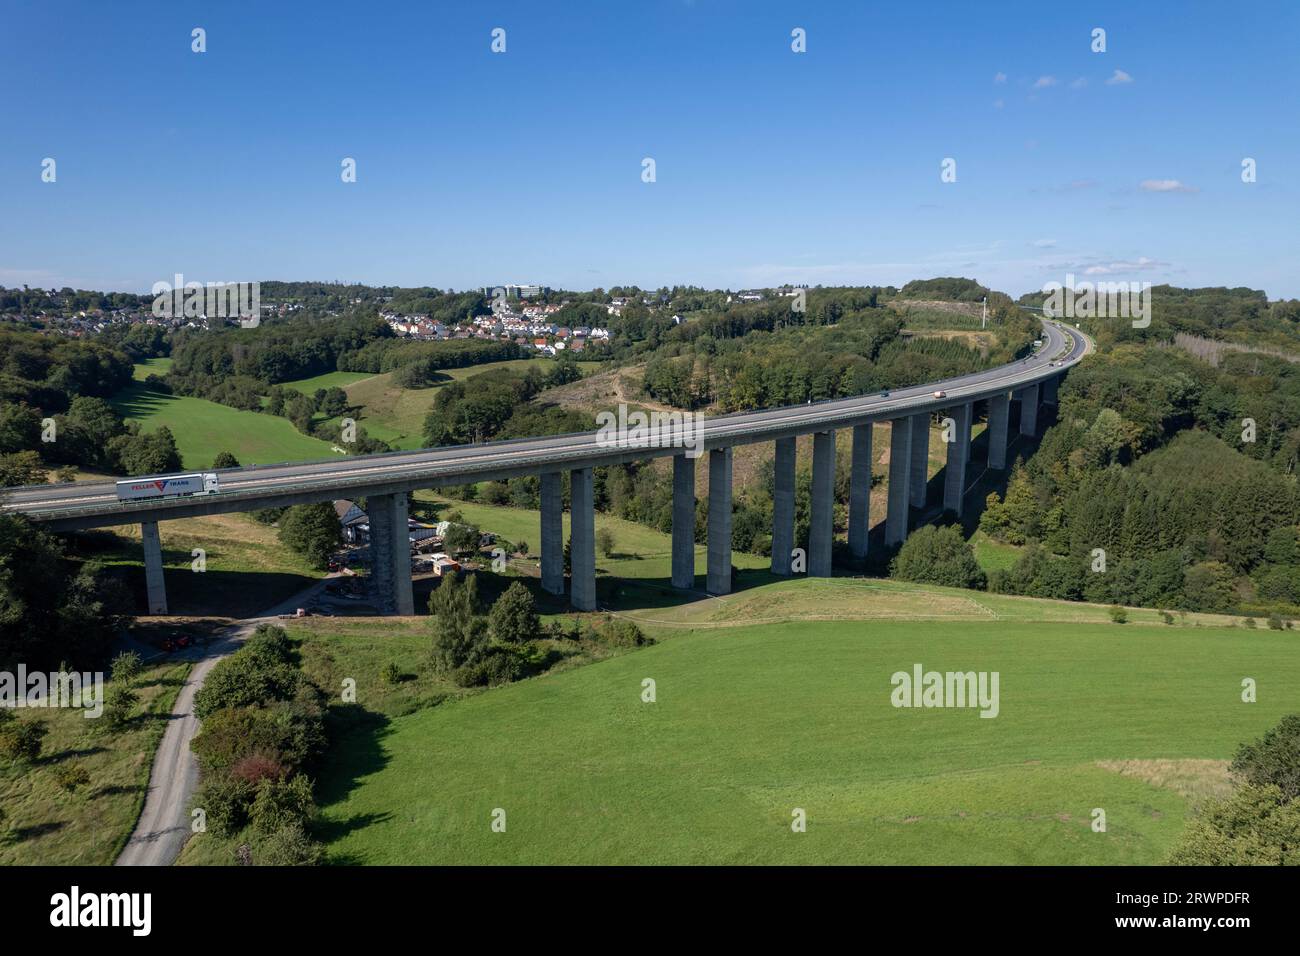 Luftaufnahme Viadukt Autobahnbrücke der BAB A45 - Talbrücke Bremecke der Sauerlandlinie in Lüdenscheid, Nordrhein-Westfalen, Deutschland Banque D'Images